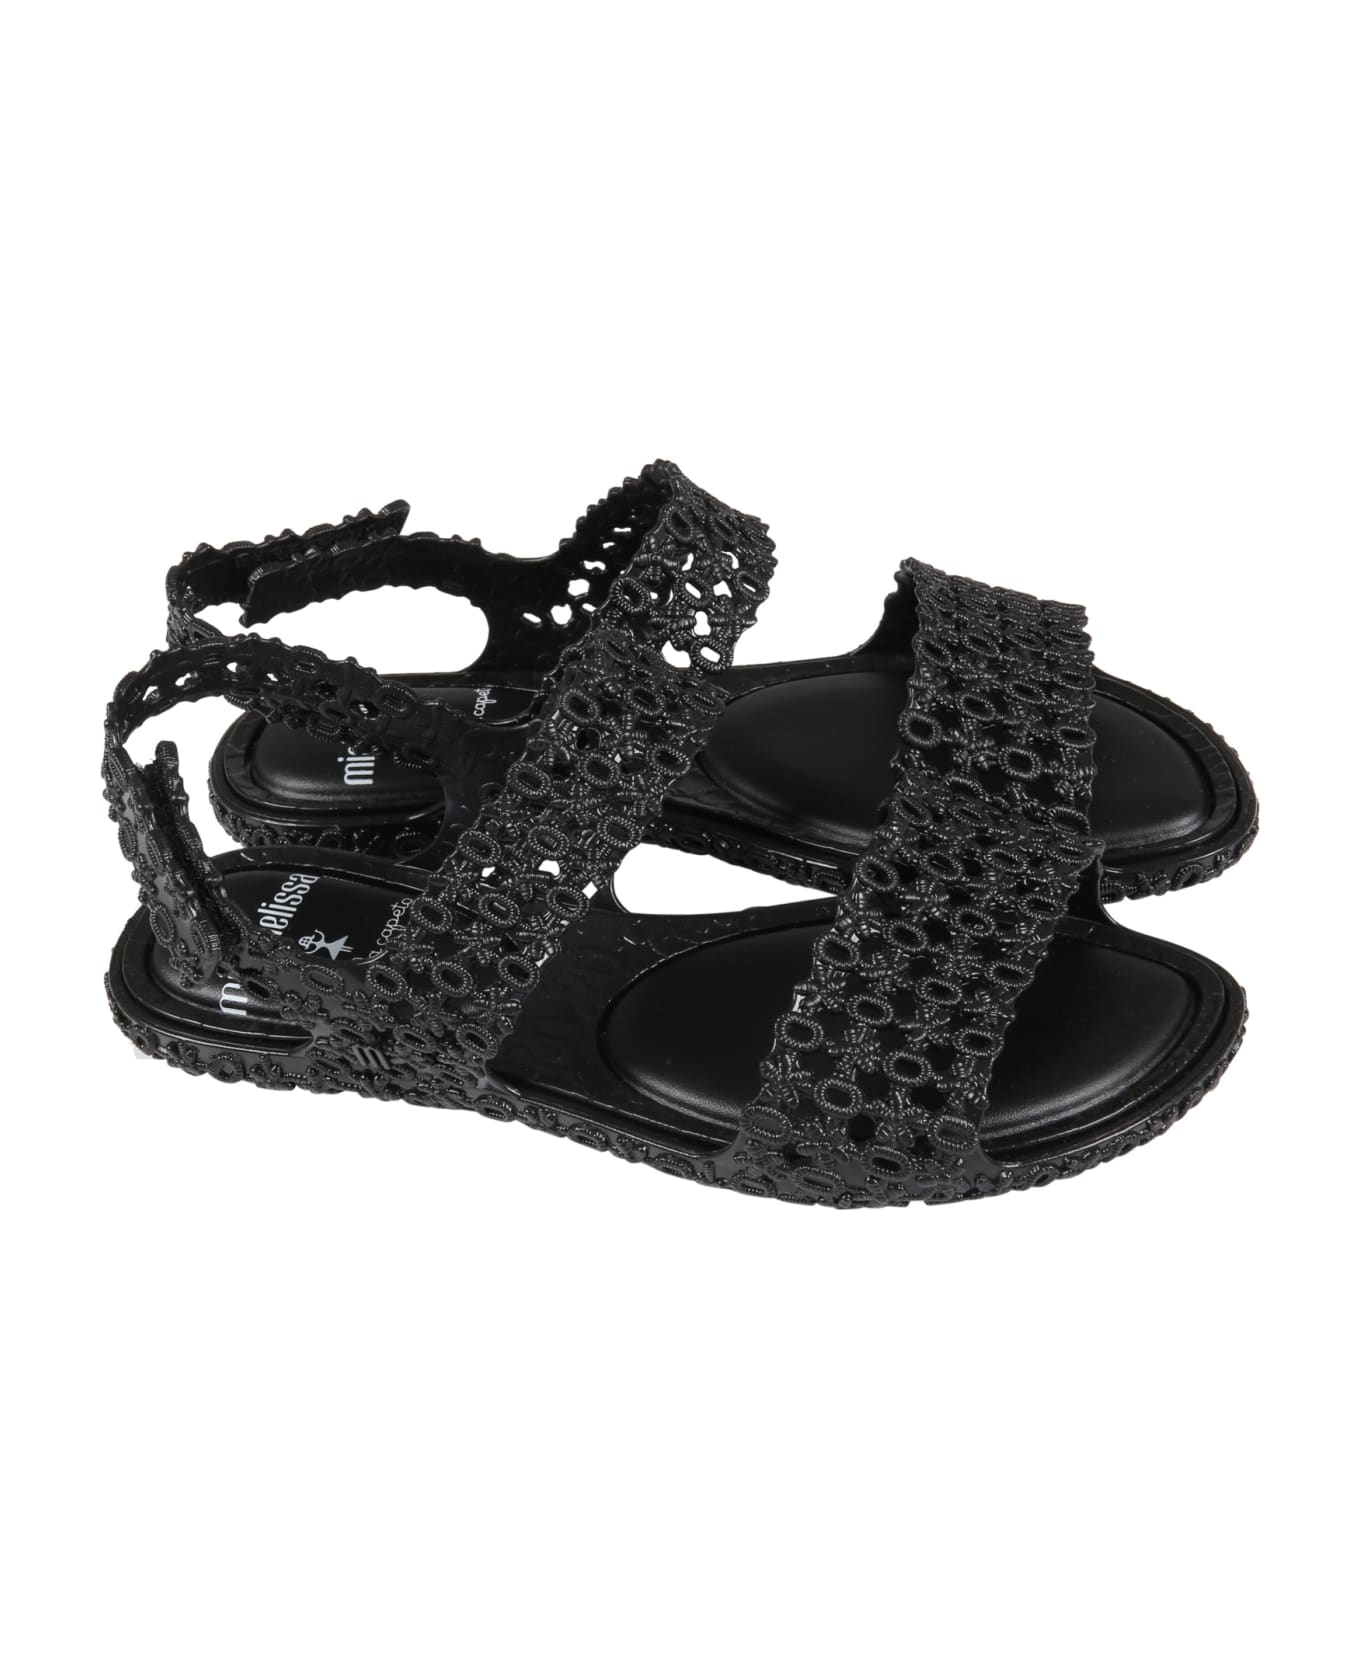 Melissa Black Sandals For Girl - Black